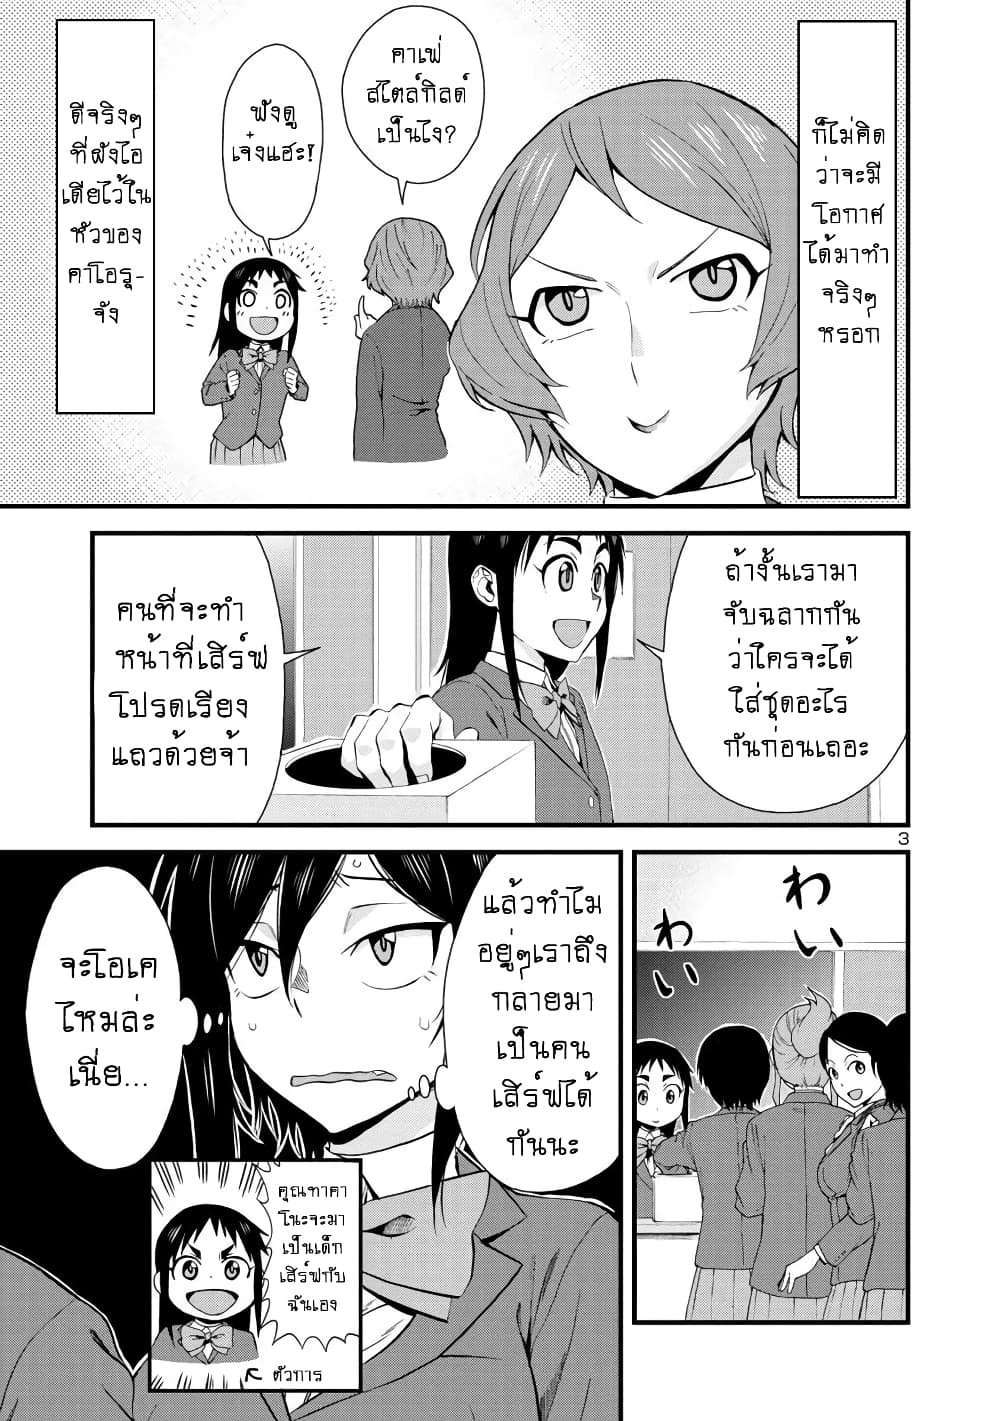 Hitomi-chan Is Shy With Strangers วันๆของน้องฮิโตมิก็เป็นแบบนี้แหล่ะ 32-32